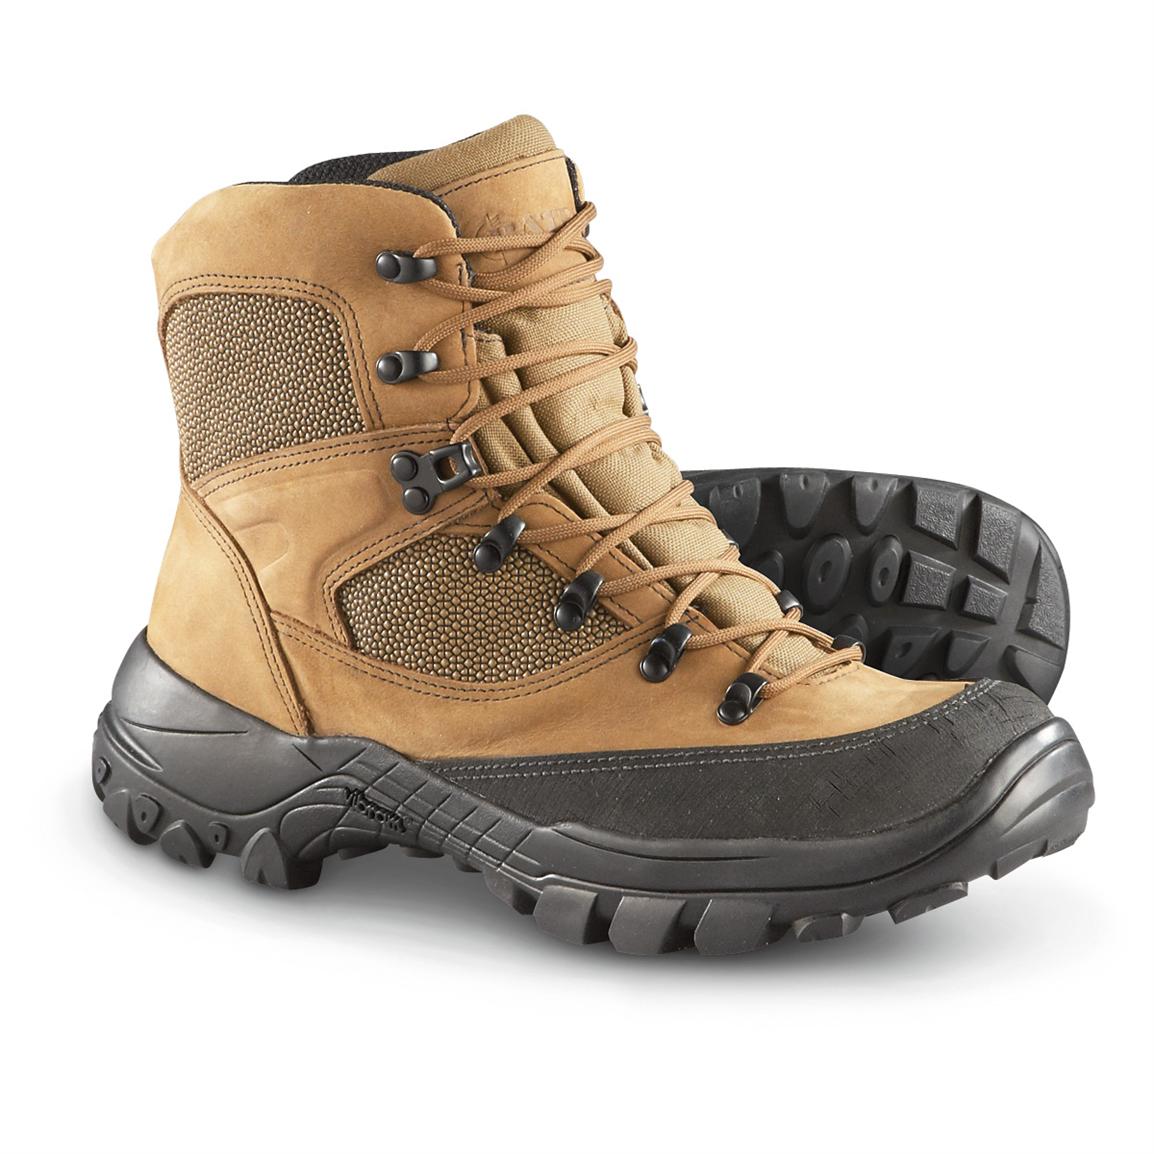 Men's Bates GORE-TEX Hiker Boots, Brown